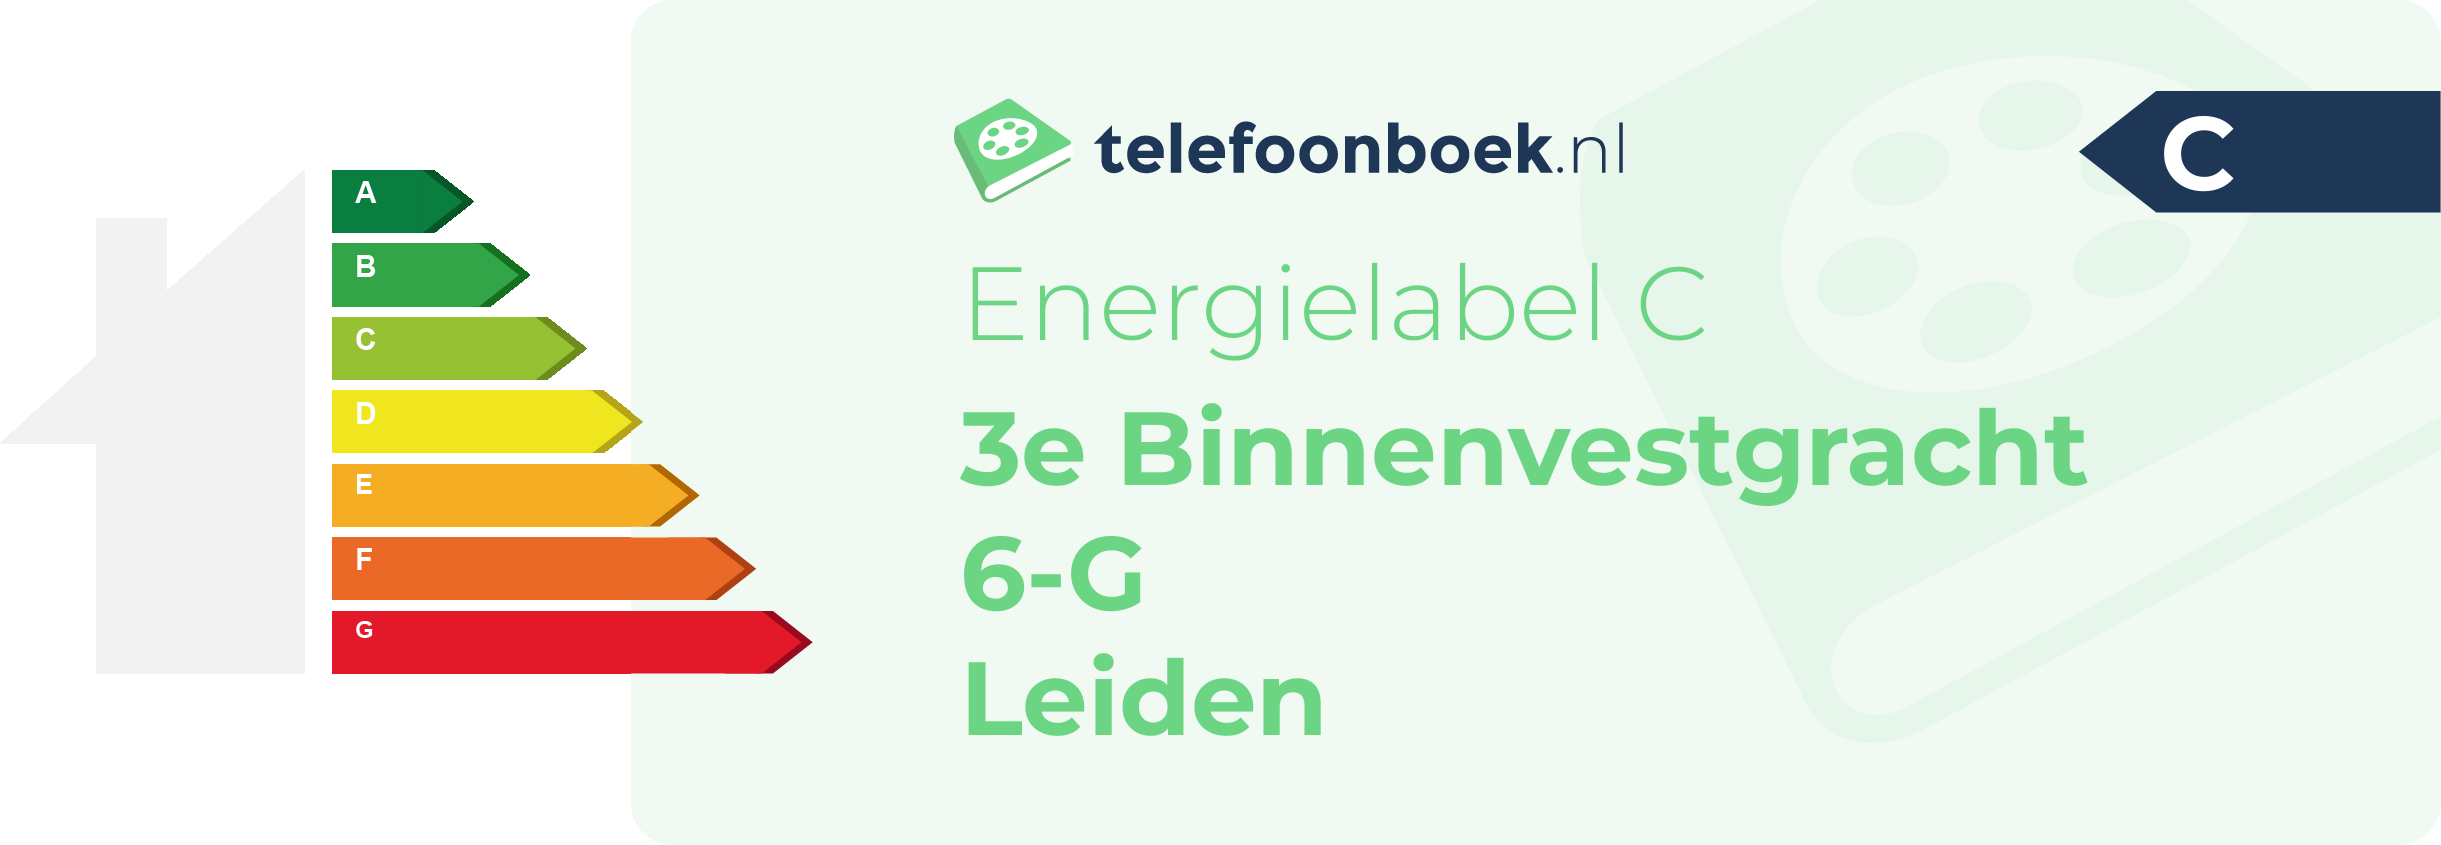 Energielabel 3e Binnenvestgracht 6-G Leiden